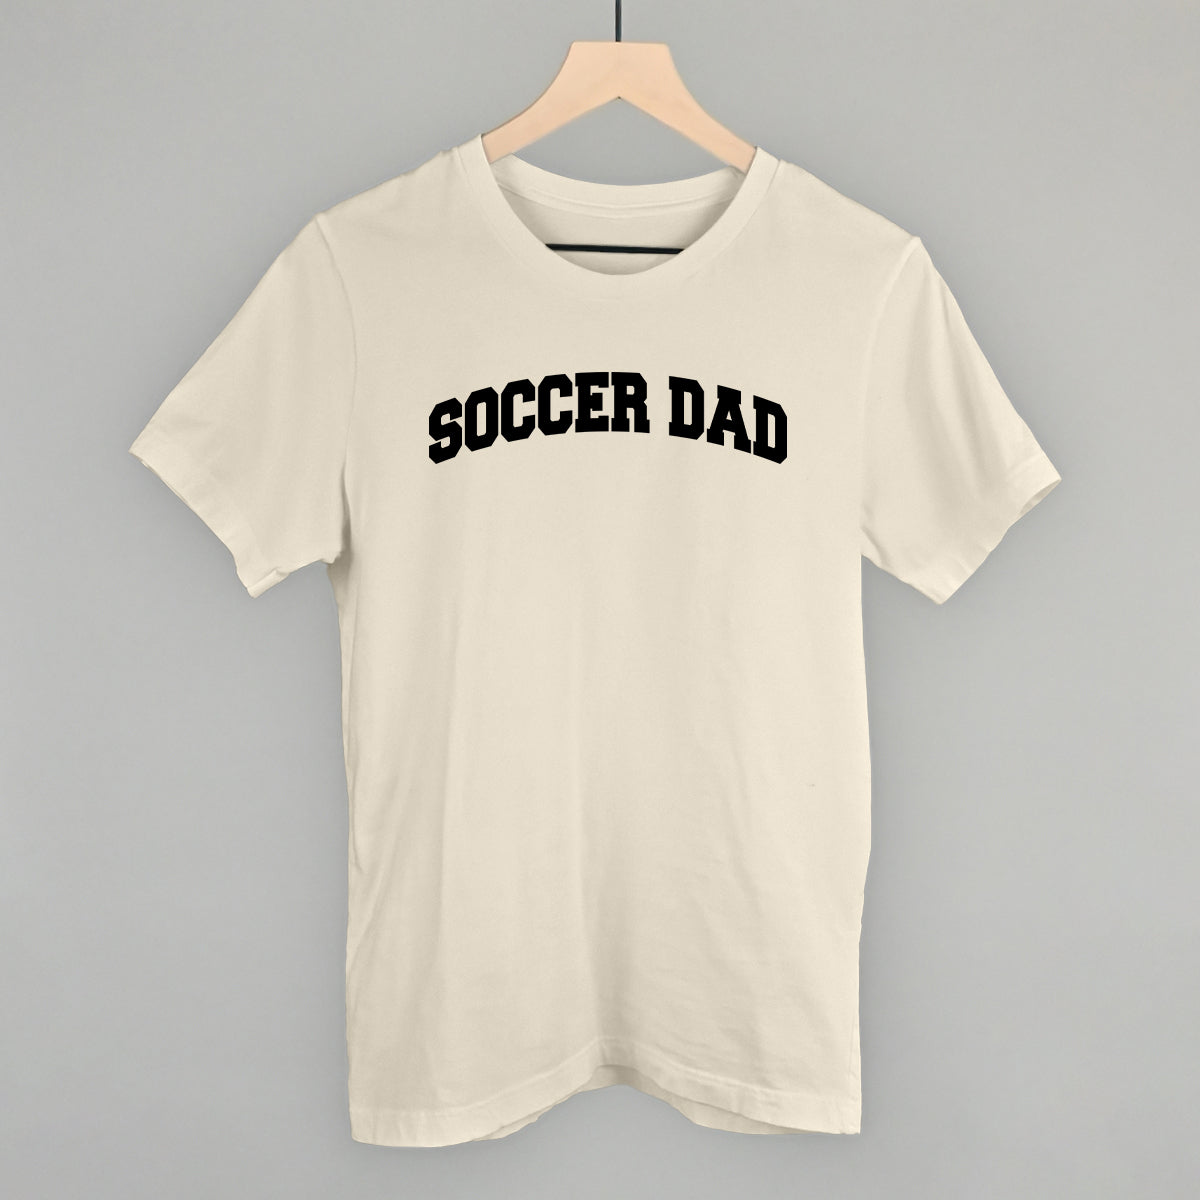 Soccer Dad (Collegiate)